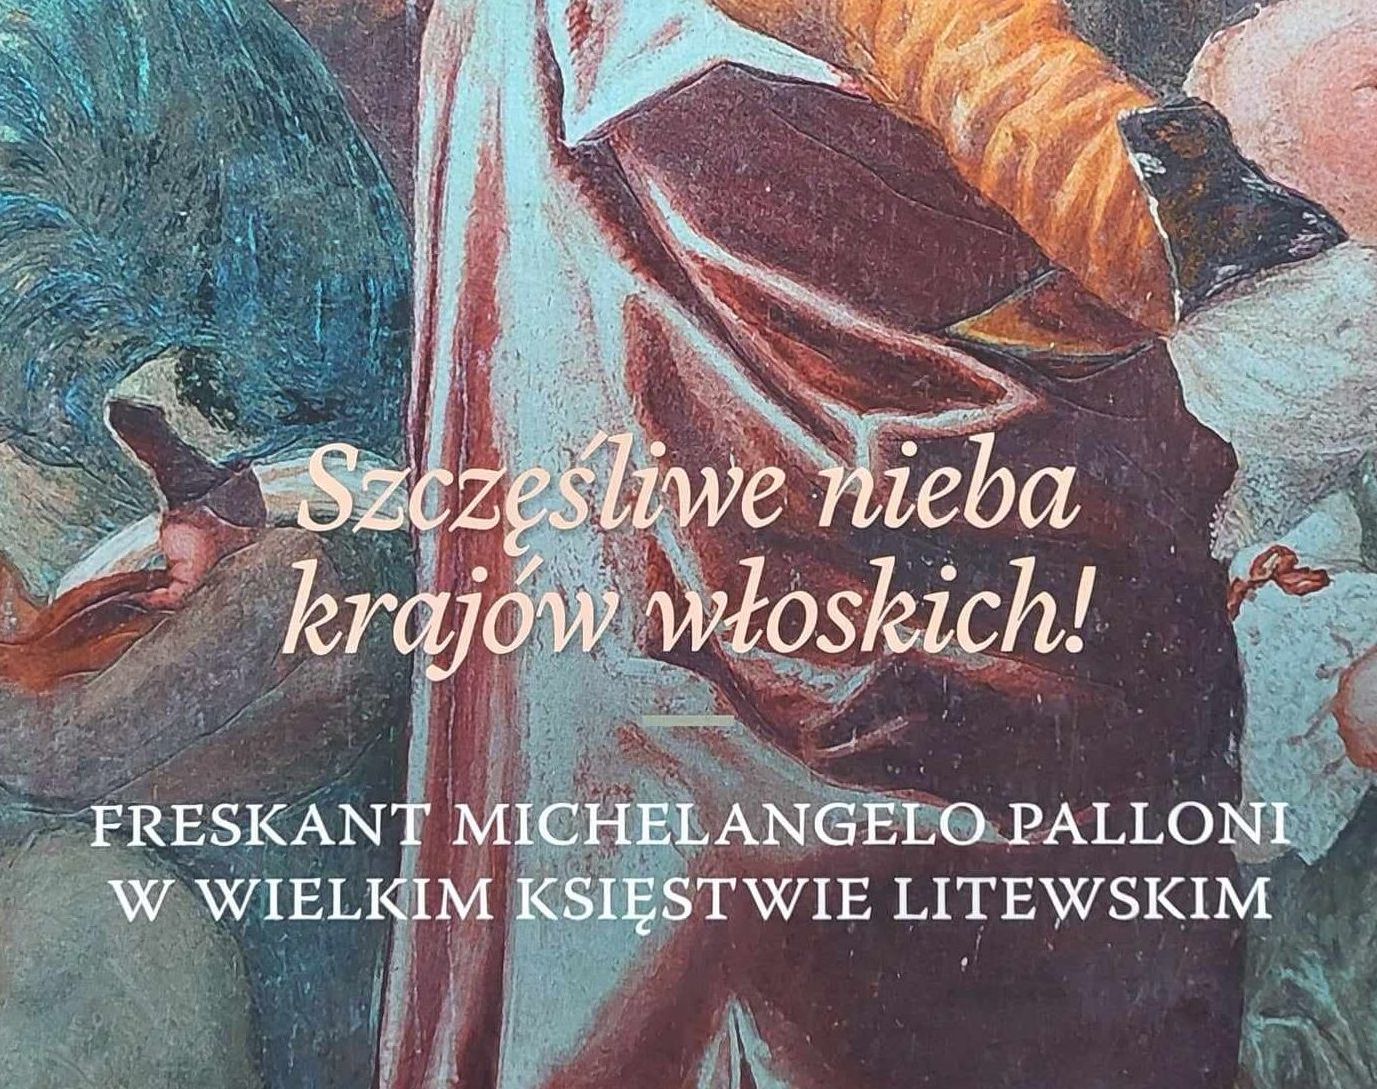 Fotografia przedstawiająca „Szczęśliwe nieba krajów włoskich!” Freskant Michelangelo Palloni w Wielkim Księstwie Litewskim - publikacja Instytutu Polonika